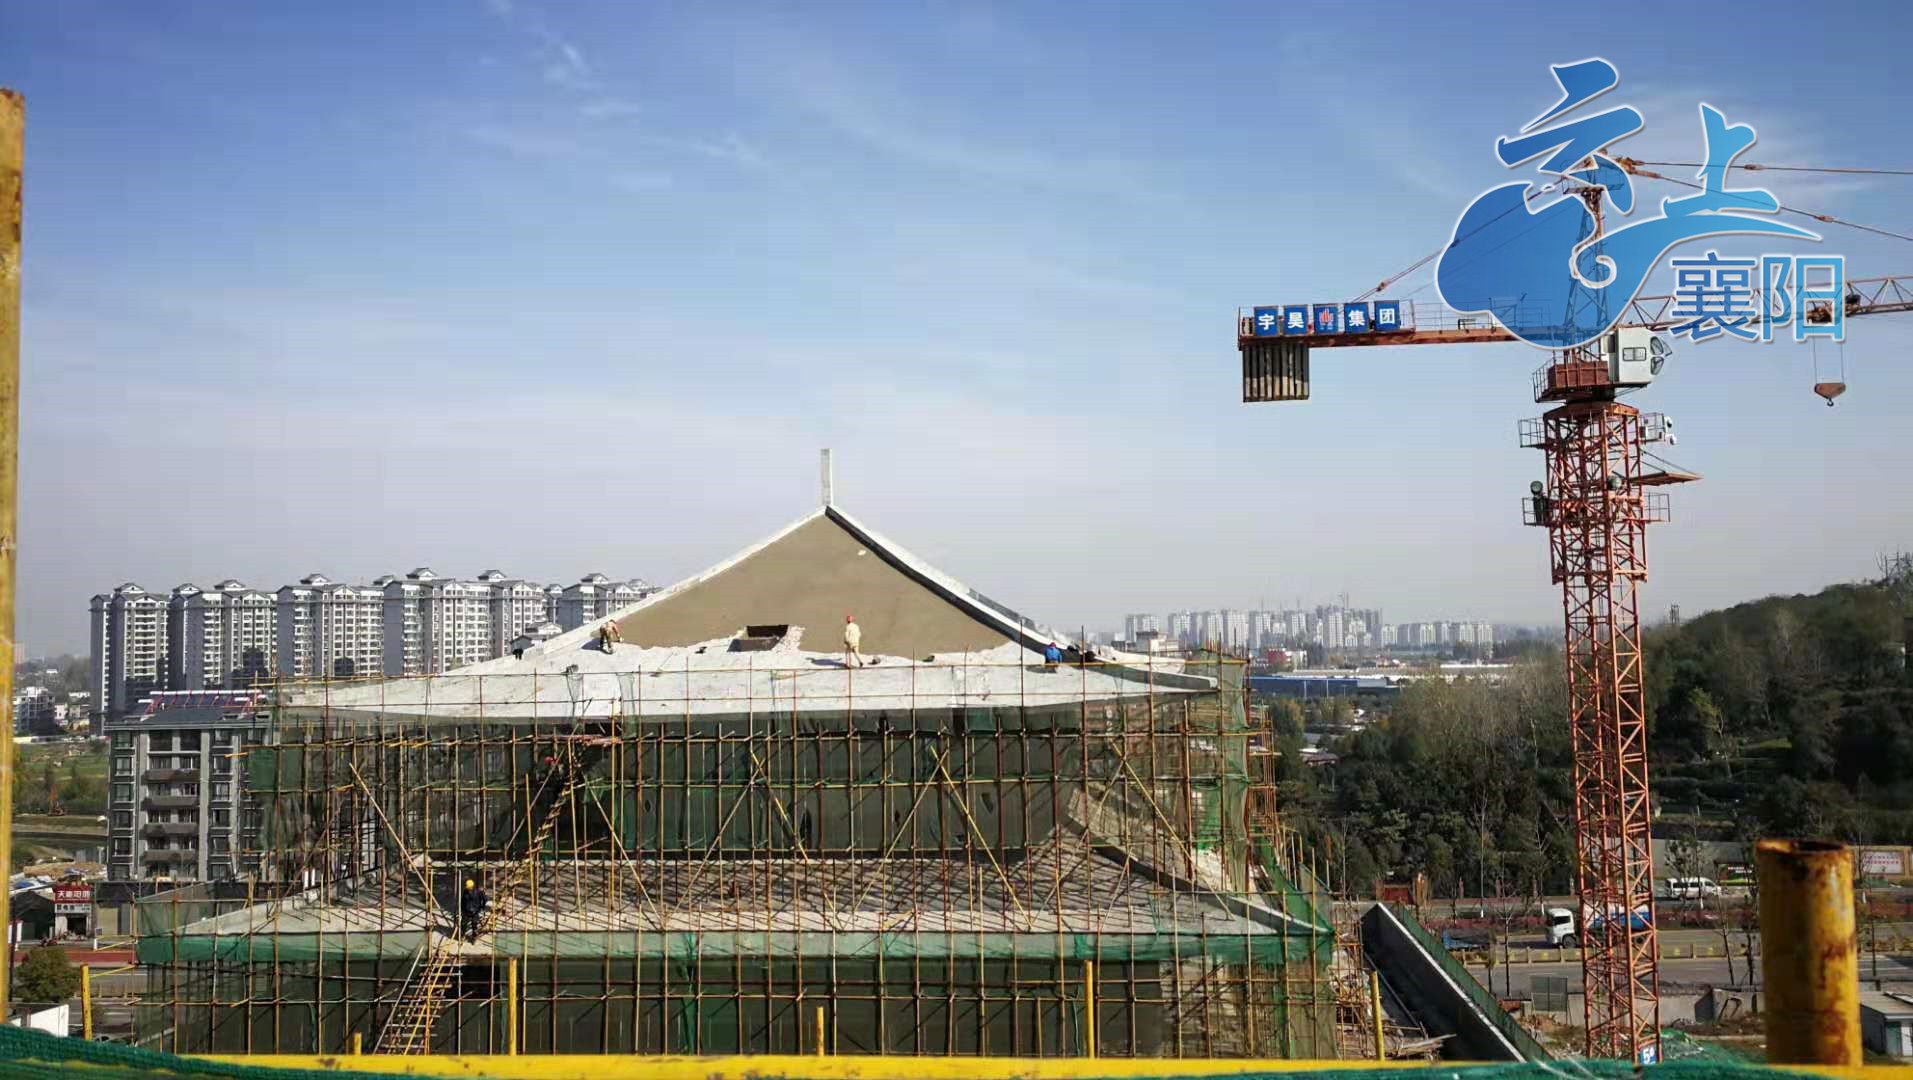 襄阳市博物馆新馆主体本月封顶 明年这里将再现一座微缩版襄阳古城